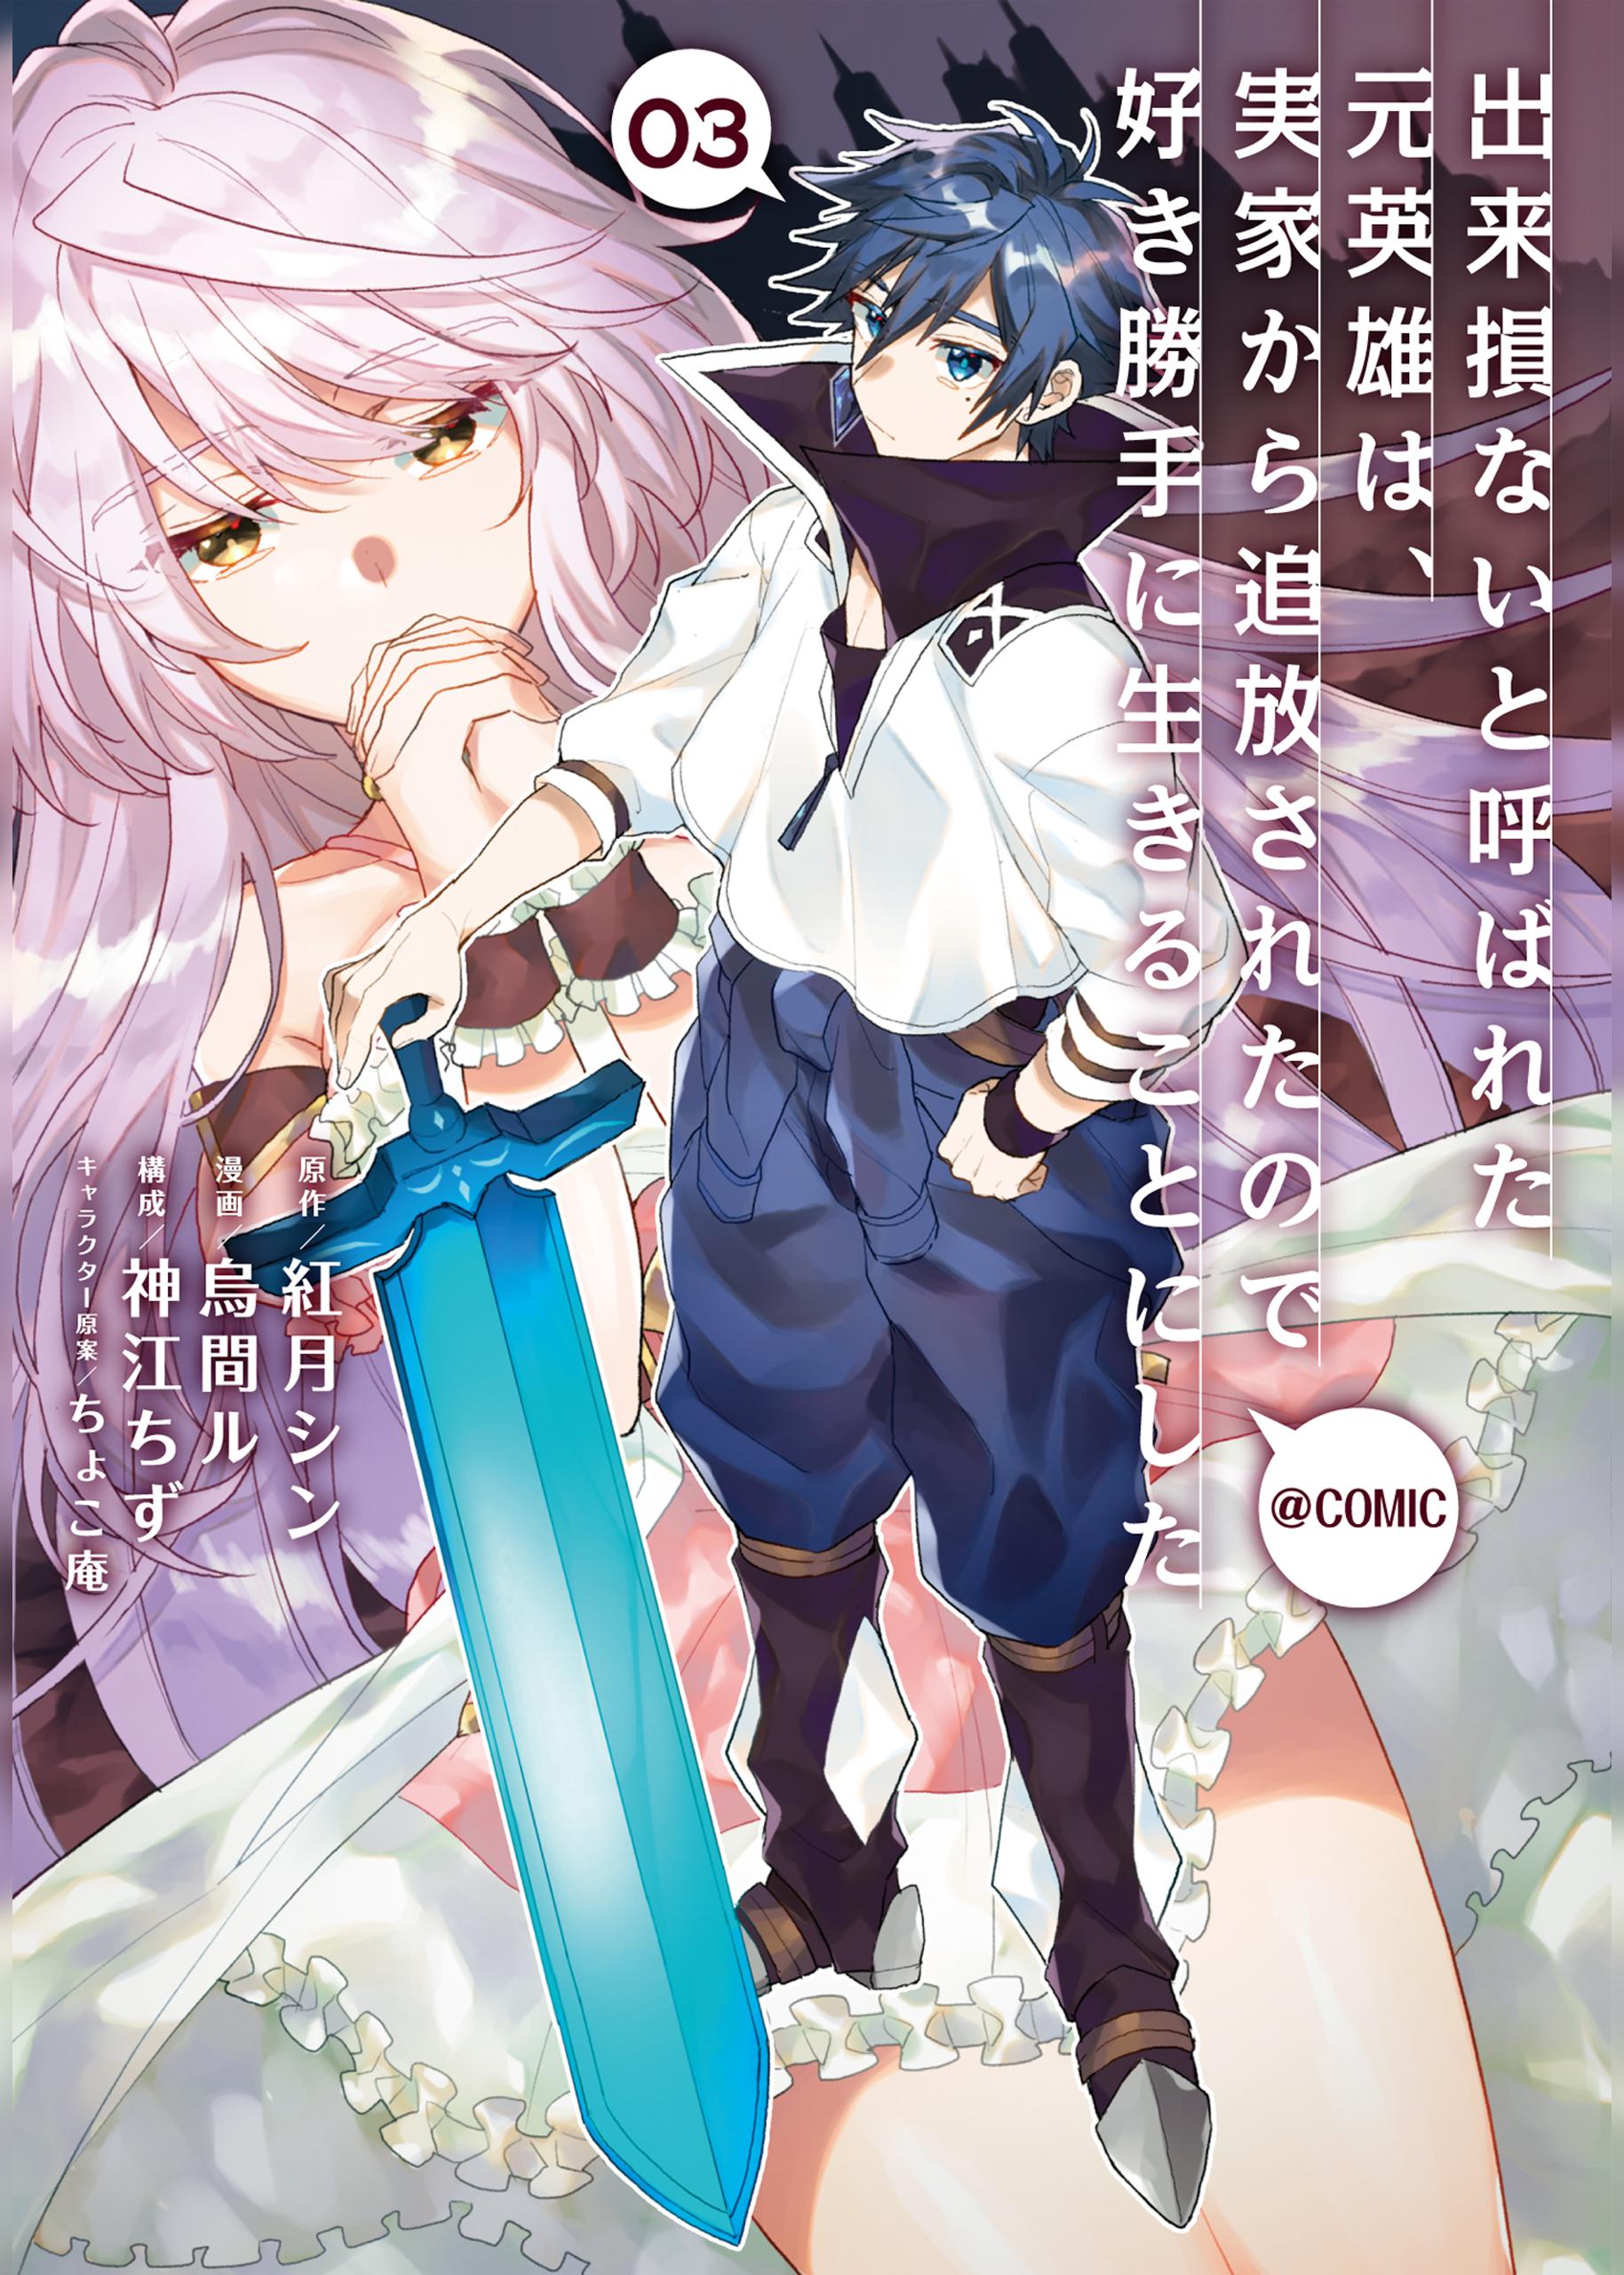 Moto Eiyuu, HP 1 no Imouto wo Densetsu no Yuusha ni Suru: Megami mo Dungeon  mo Boss Chara mo, Ore ga Zenbu DIY (Light Novel) Manga